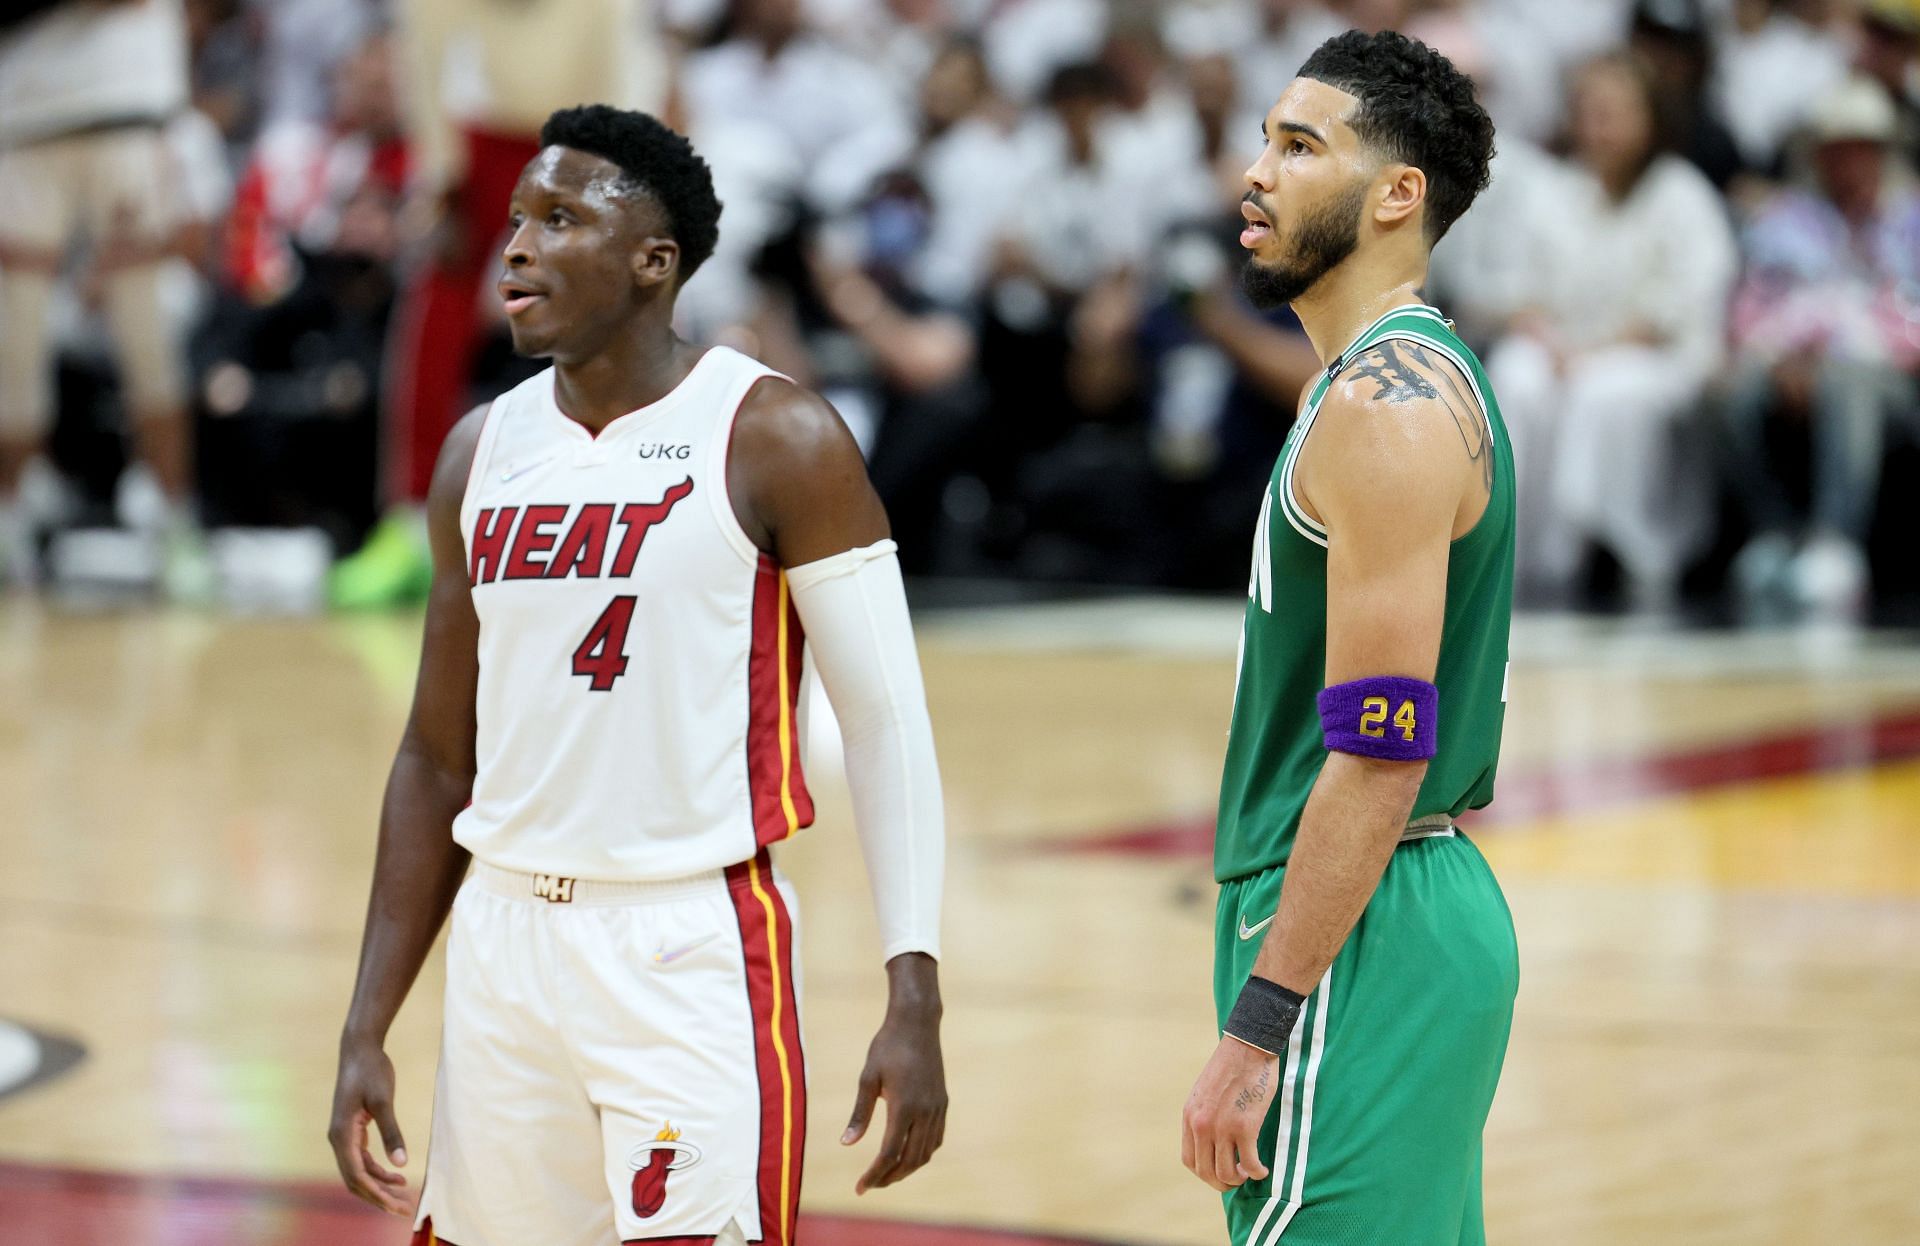 Boston Celtics vs. Miami Heat - Game 7